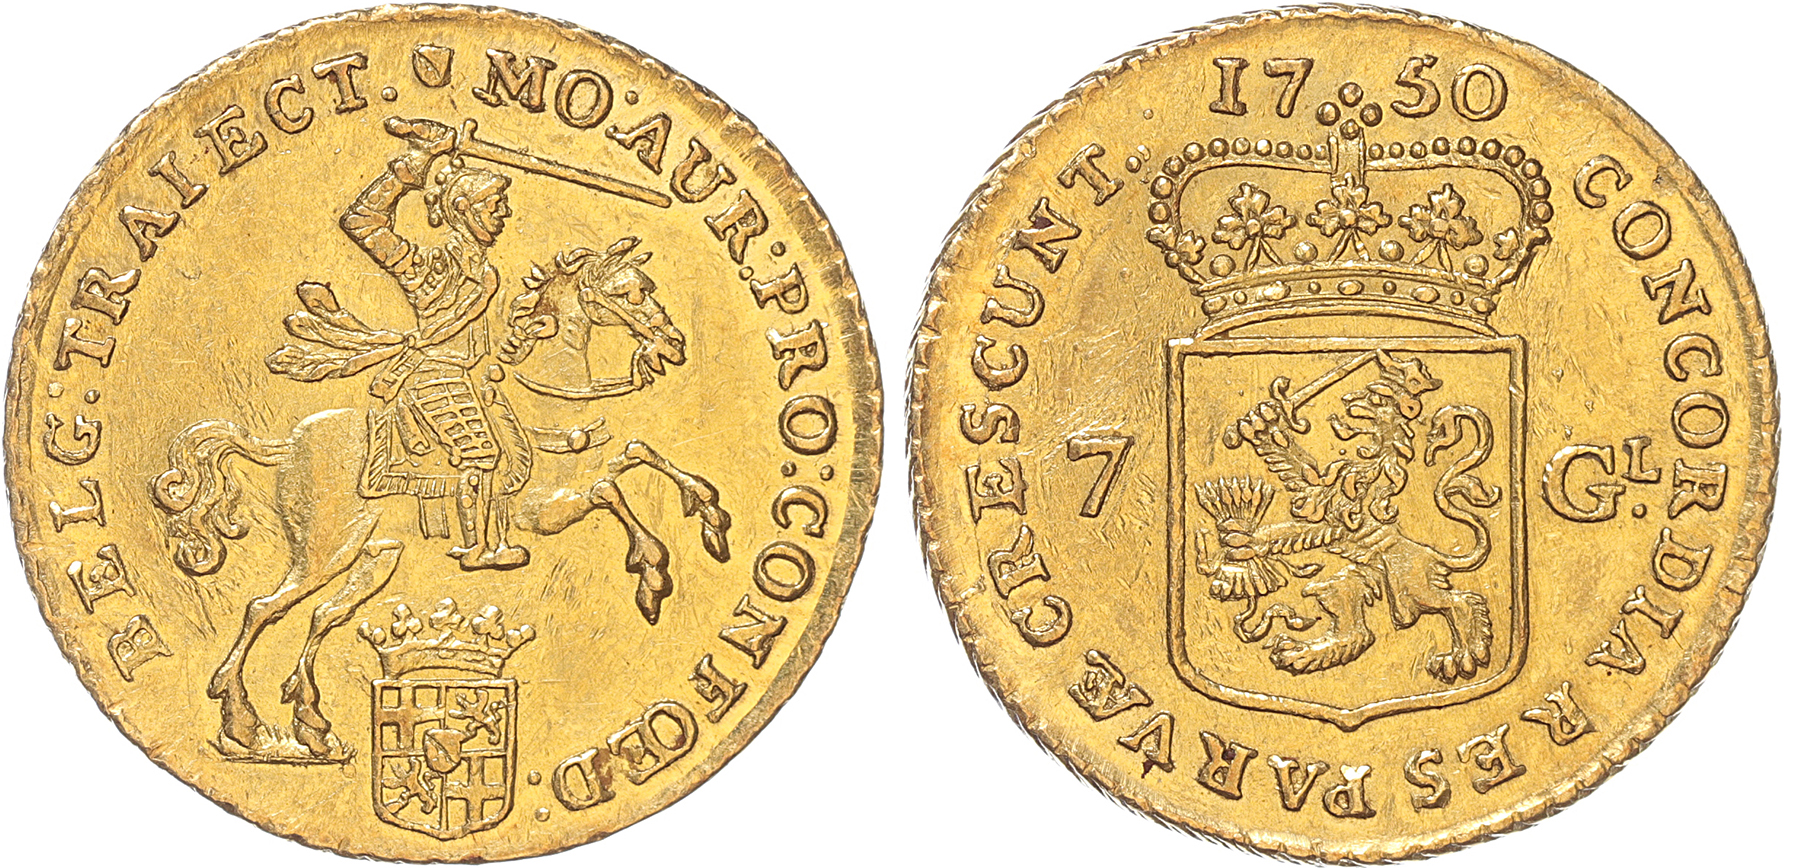 Utrecht Halve gouden rijder 1750